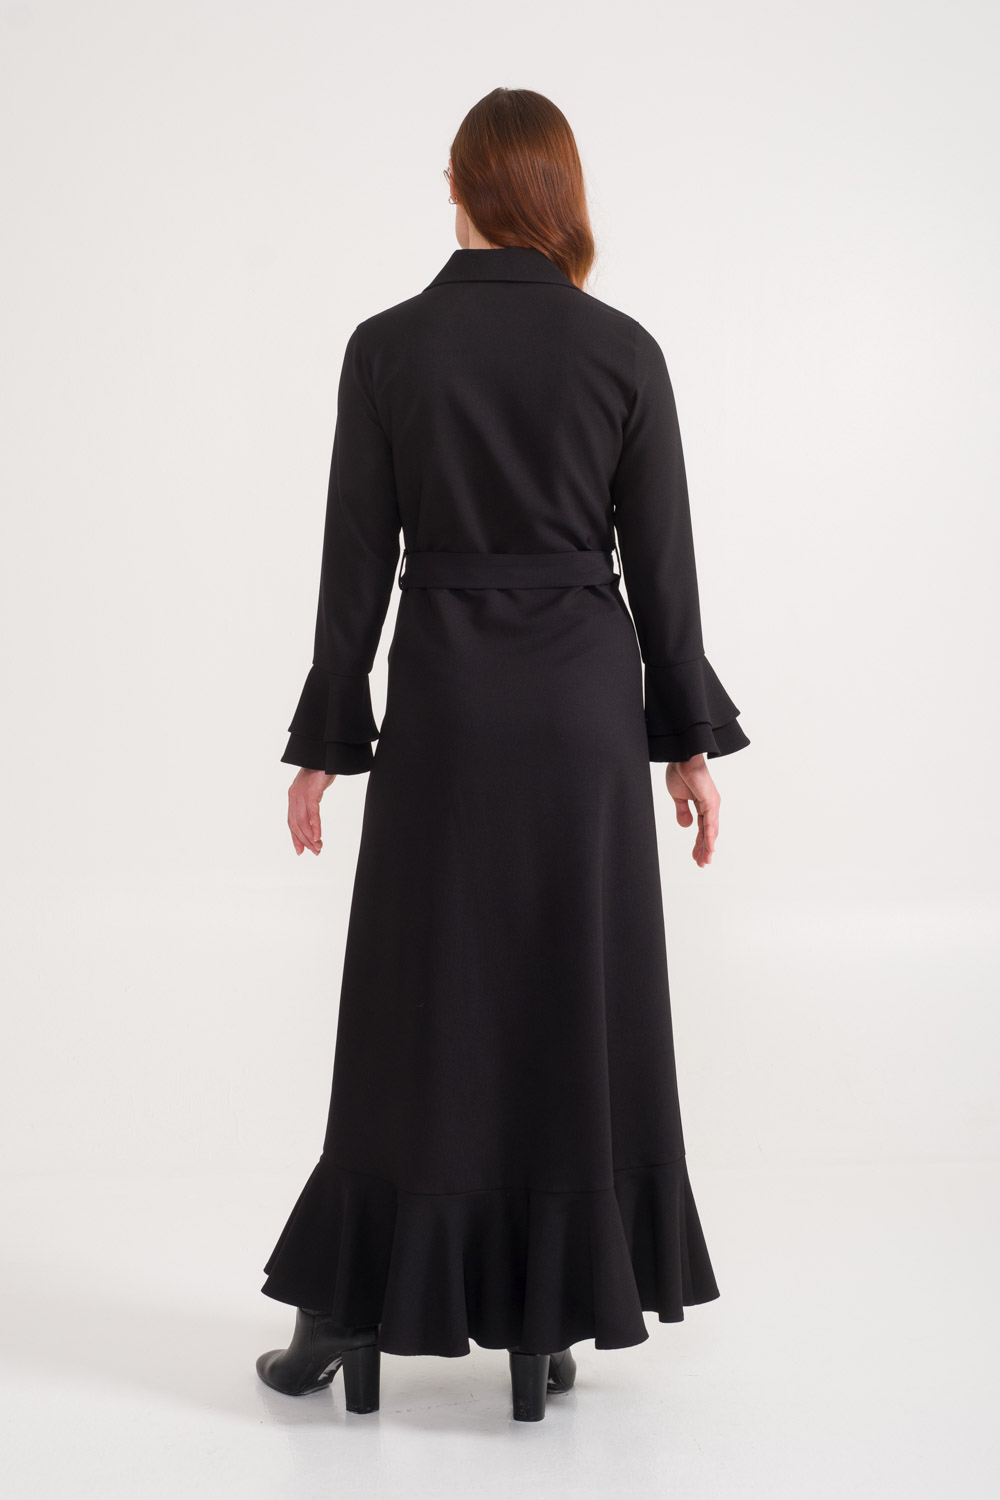 فستان طويل أسود بياقة قميص وأذرع واسعة